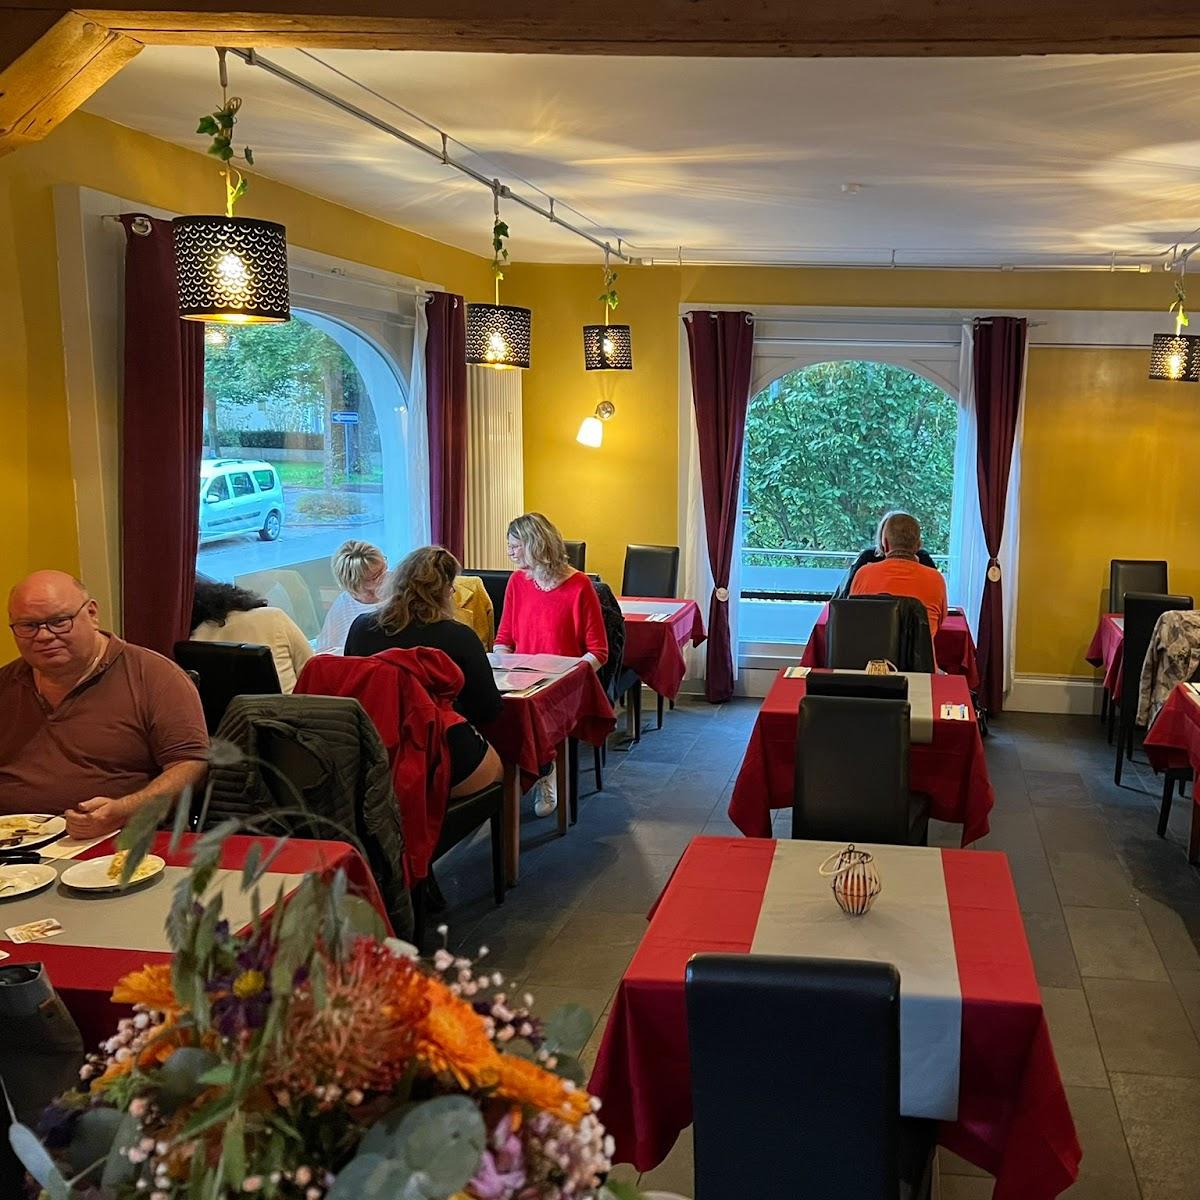 Restaurant "Akropolis Griechische Restaurant" in Donaueschingen